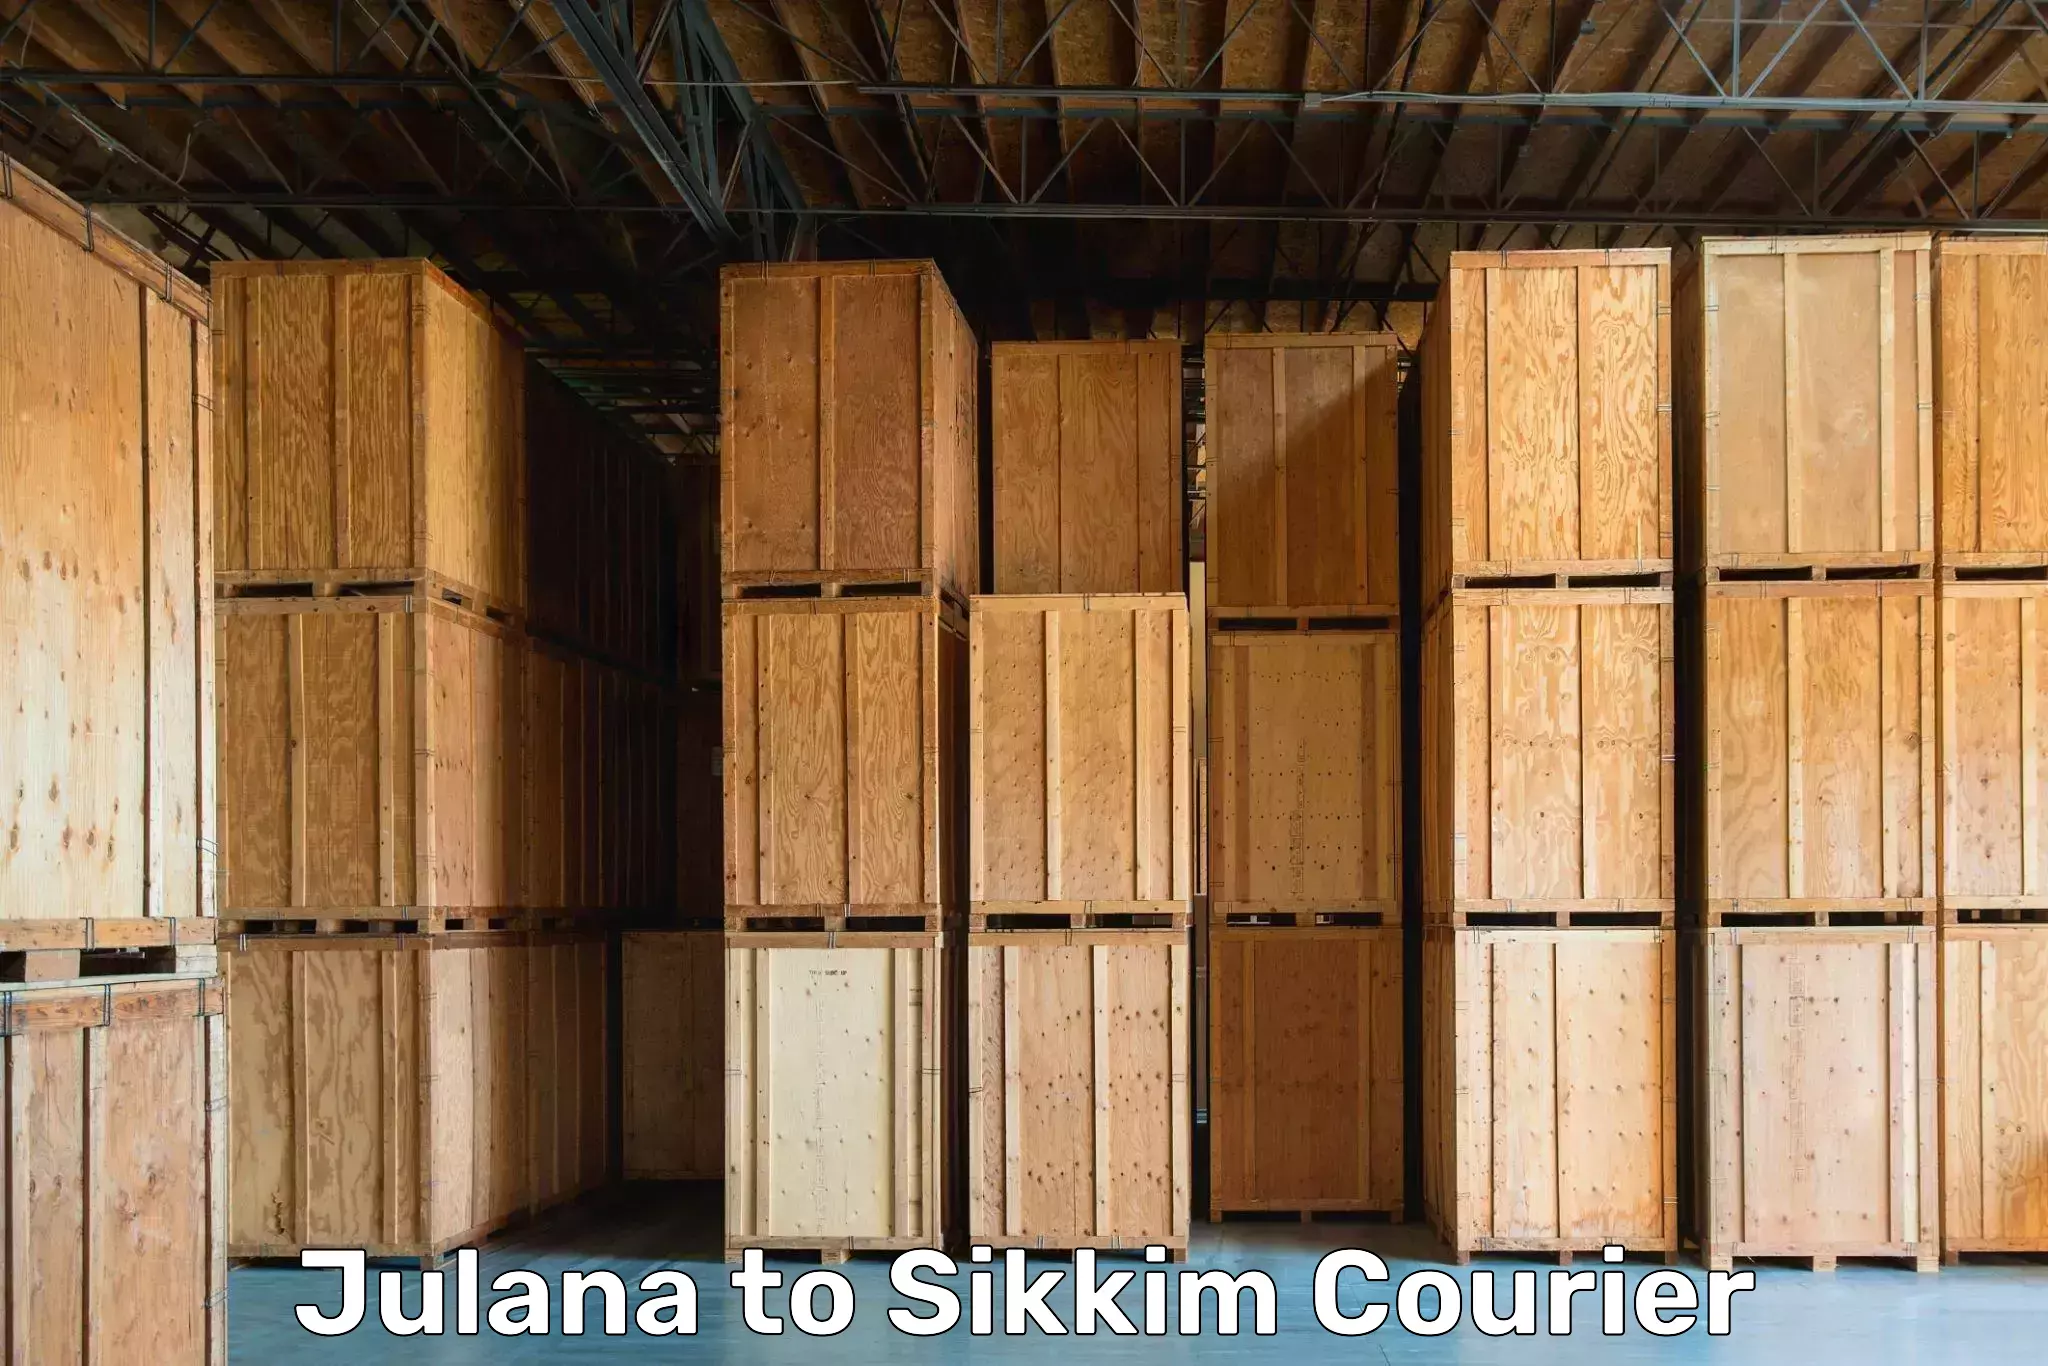 Furniture moving experts Julana to Mangan